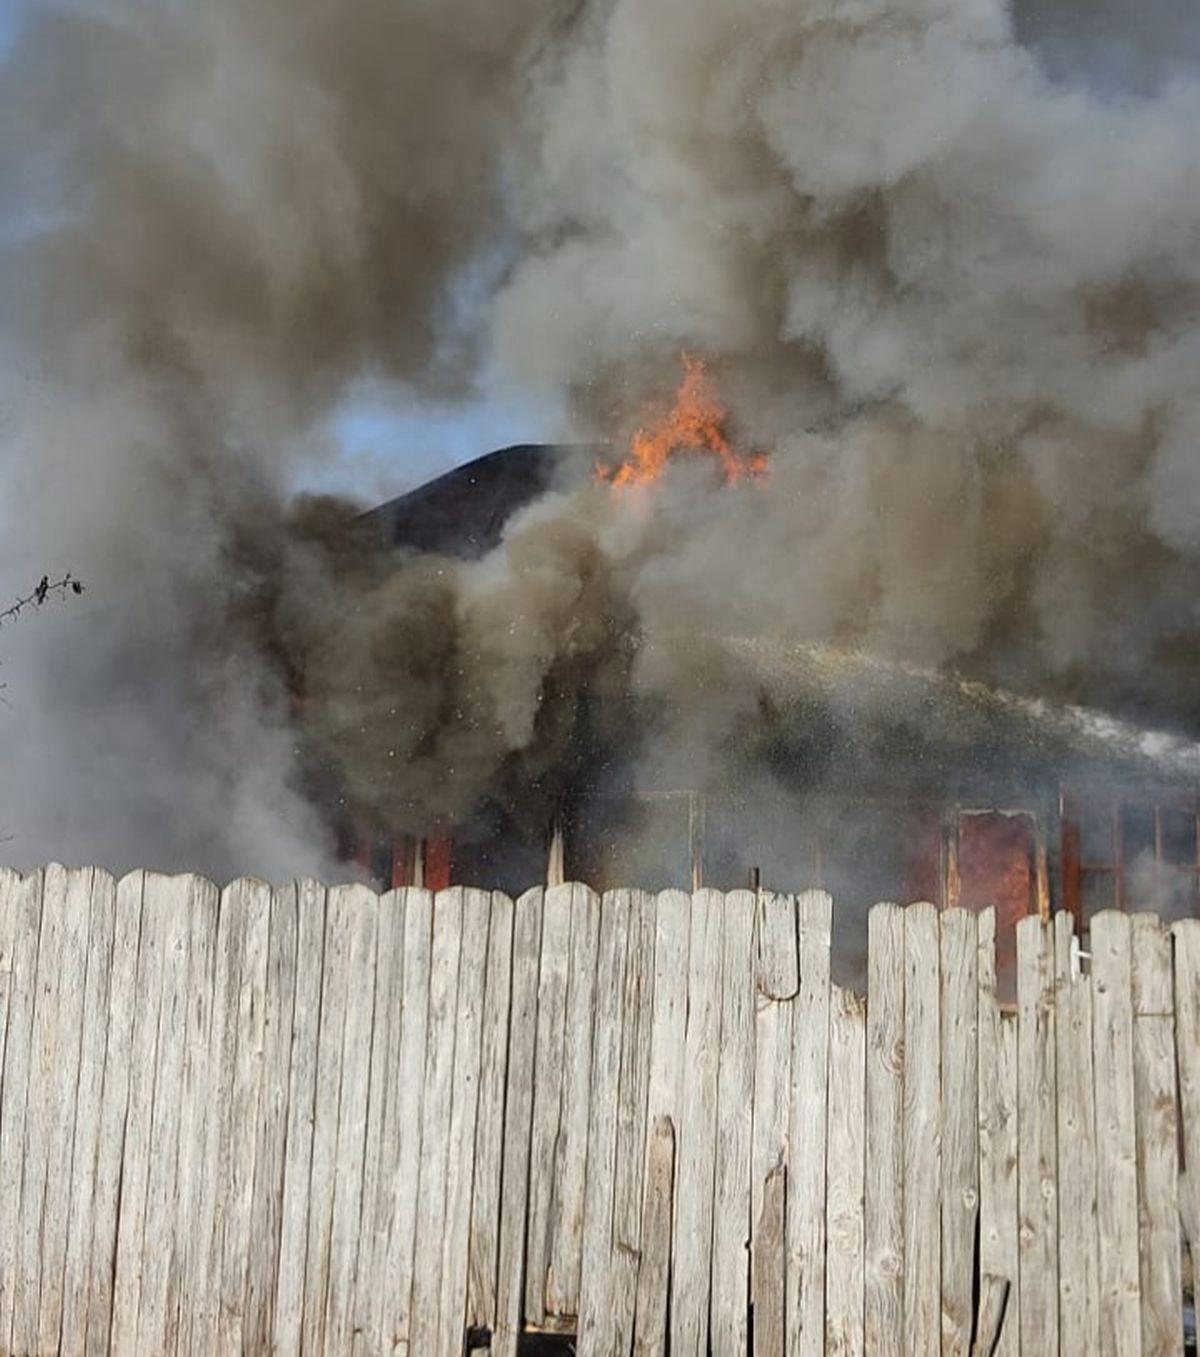 La sosirea pompierilor, locuința ardea generalizat, cu flacără și degajări mari de fum